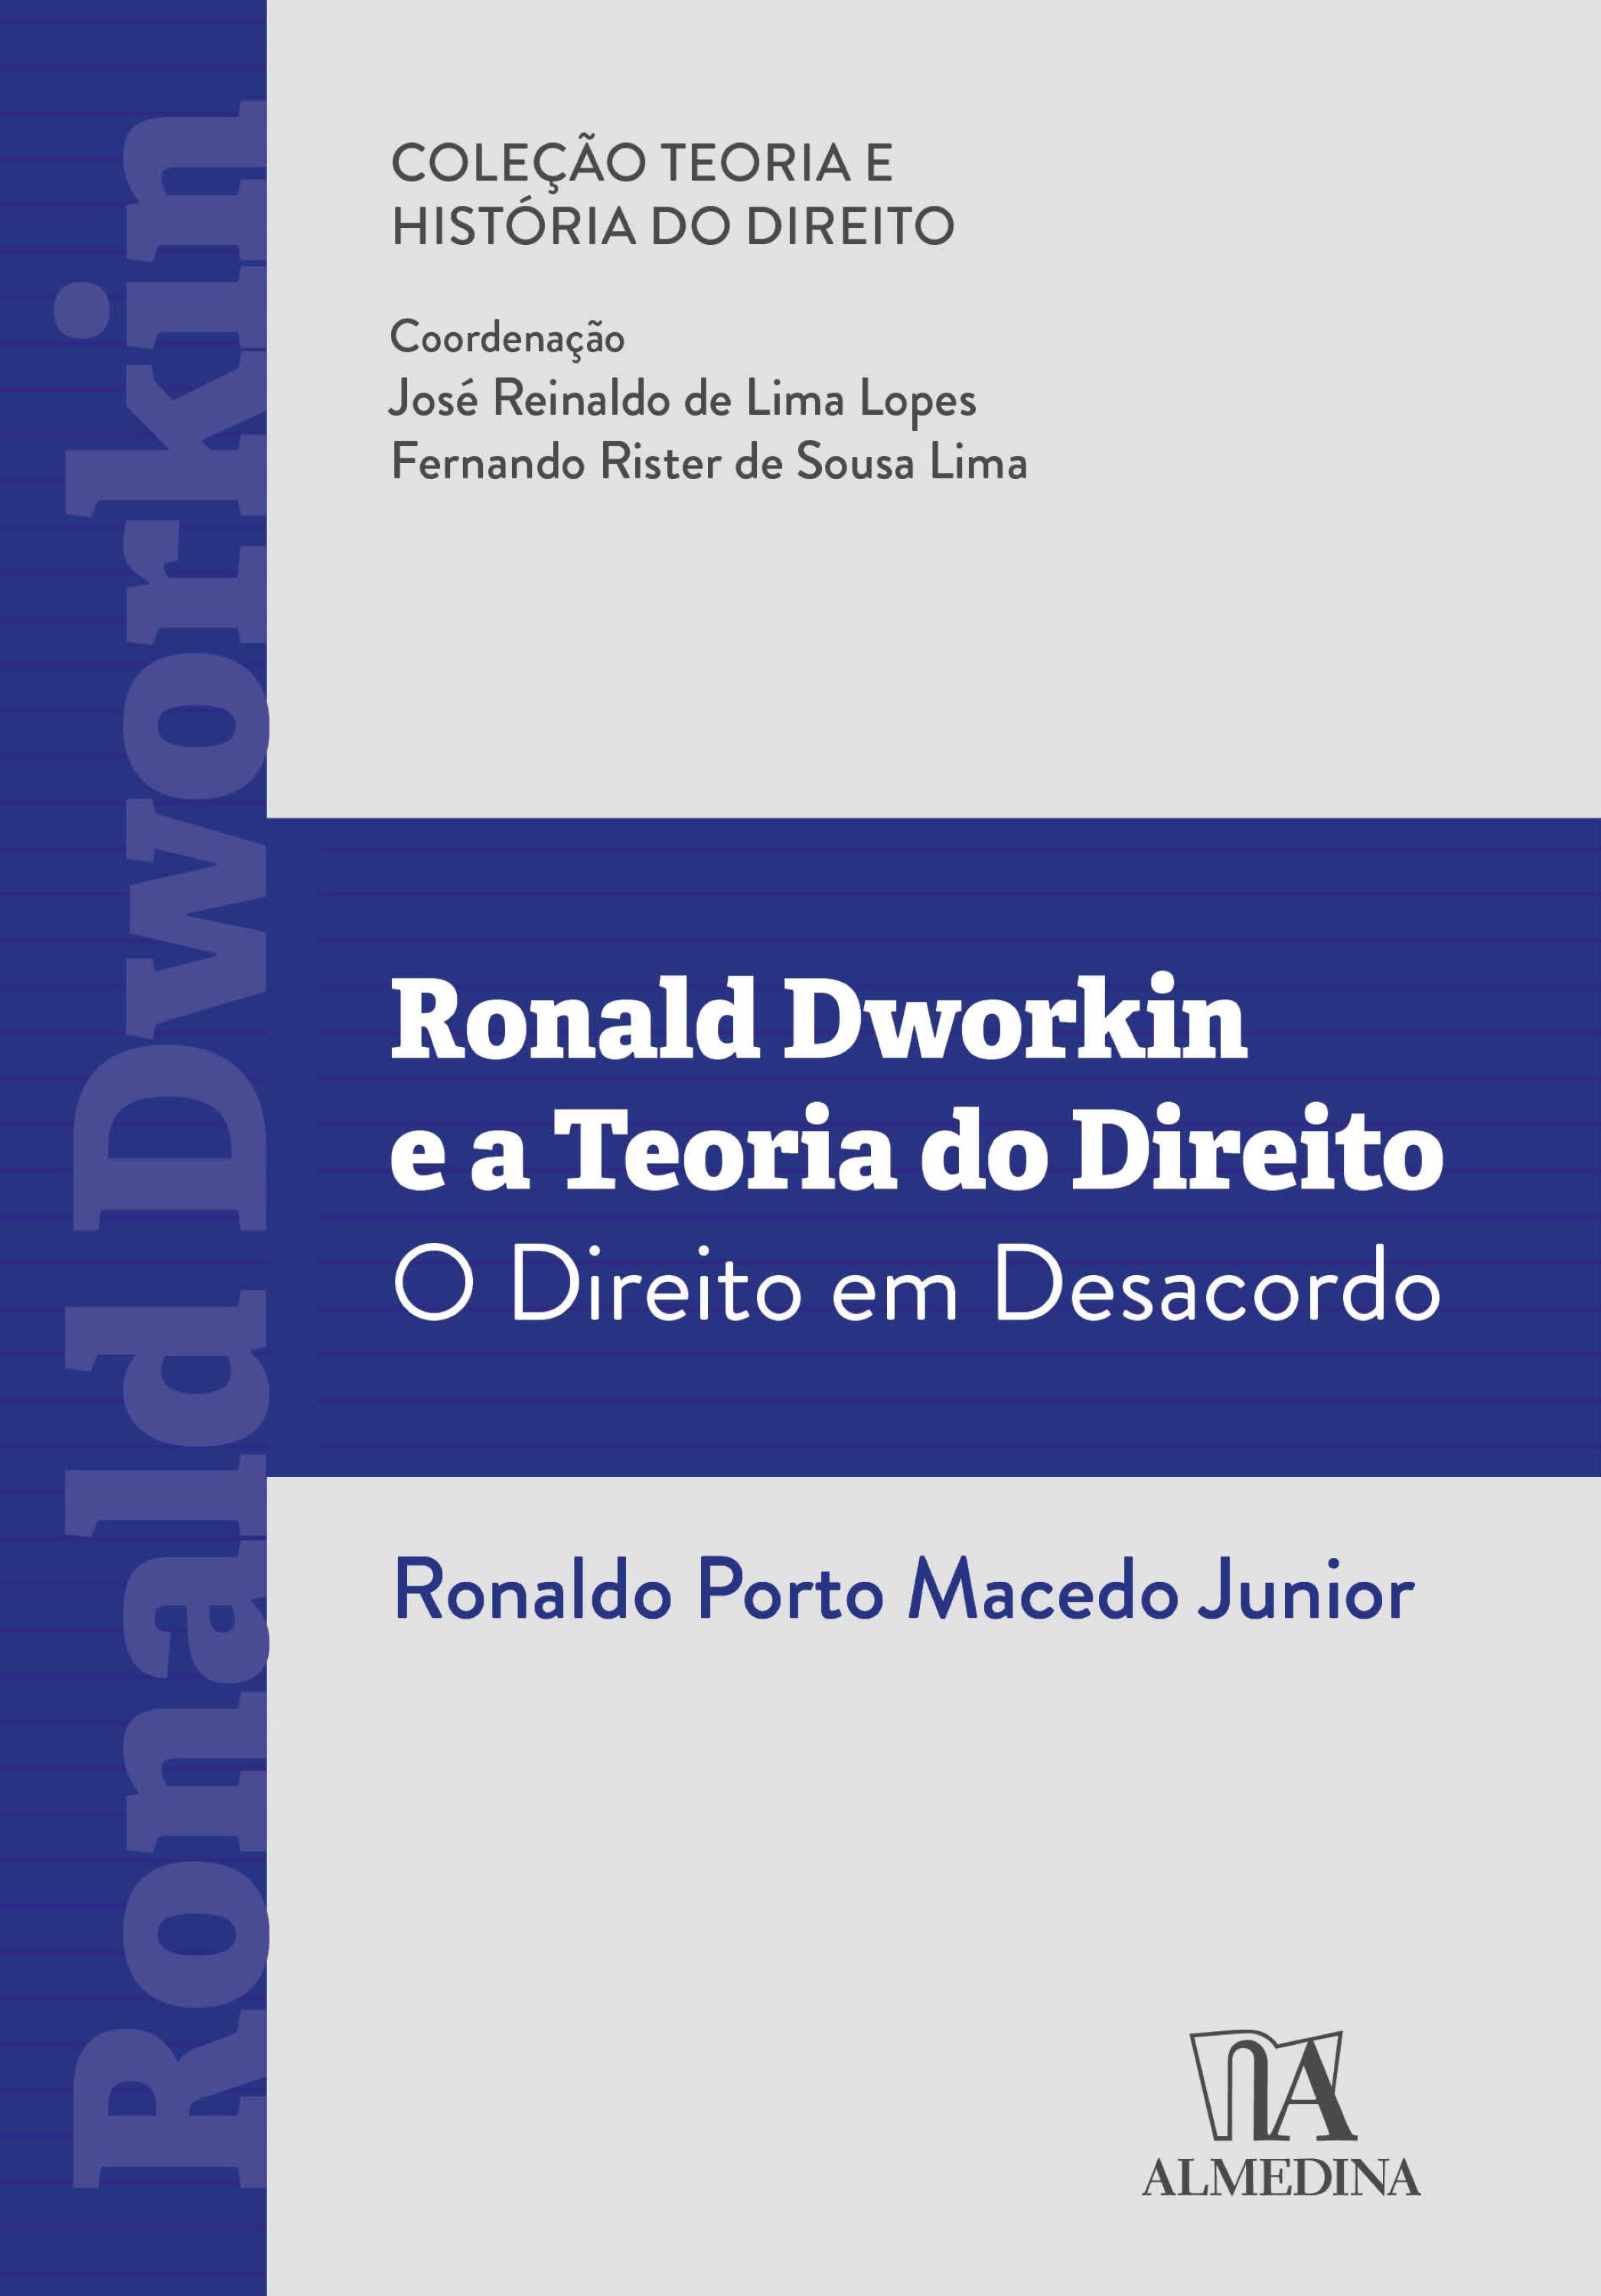 Ronald Dworkin e a teoria do Direito